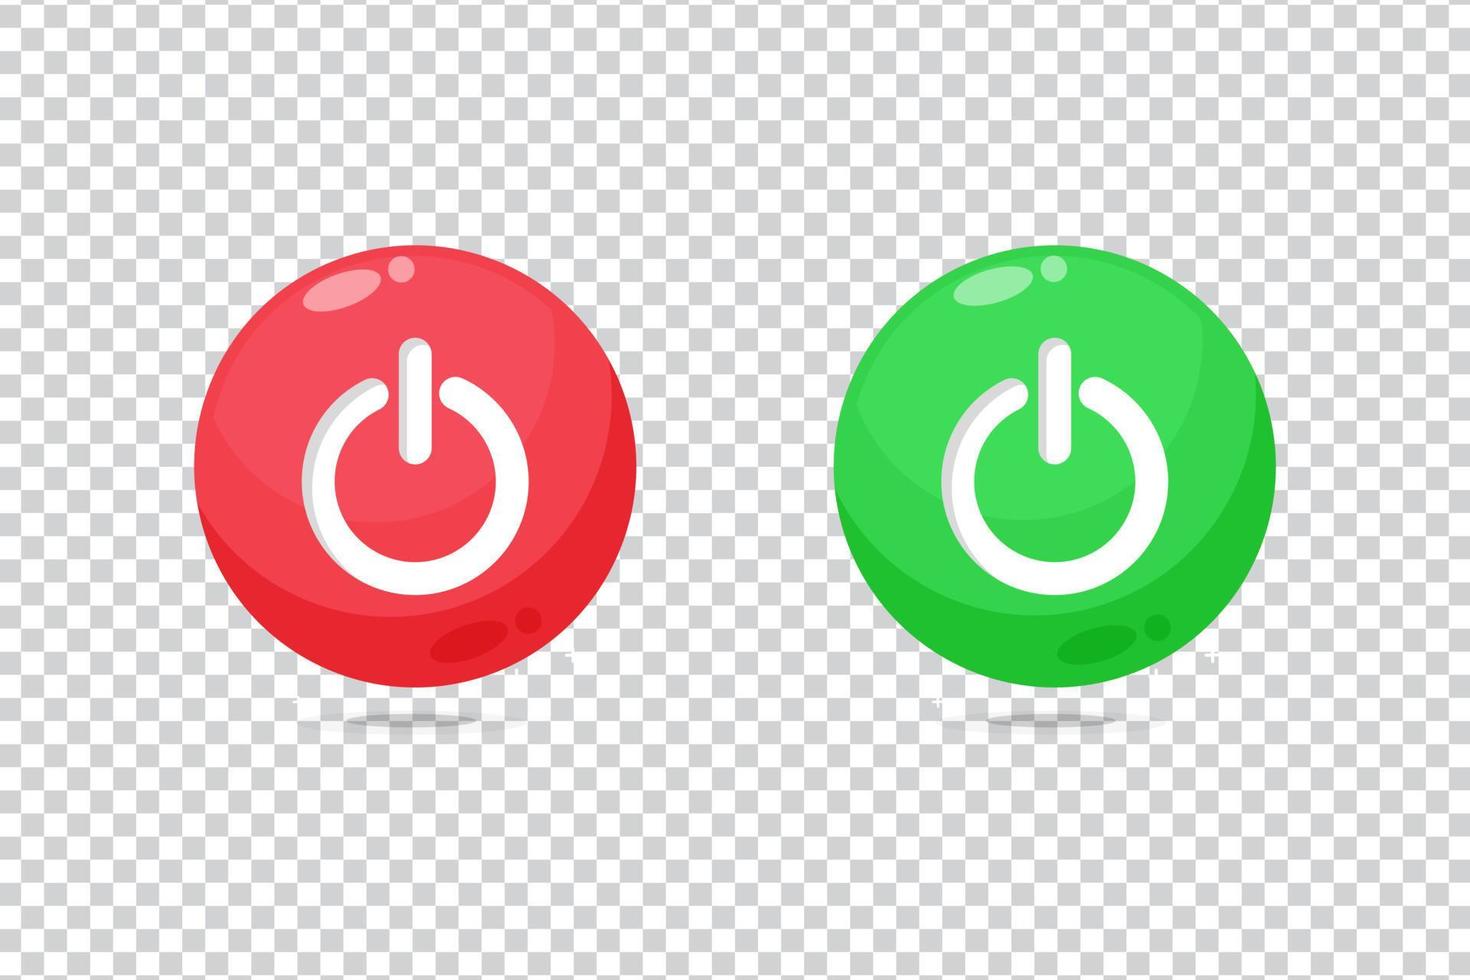 Einschalten aus rotes und grünes Tastensymbol auf leerem Hintergrund vektor